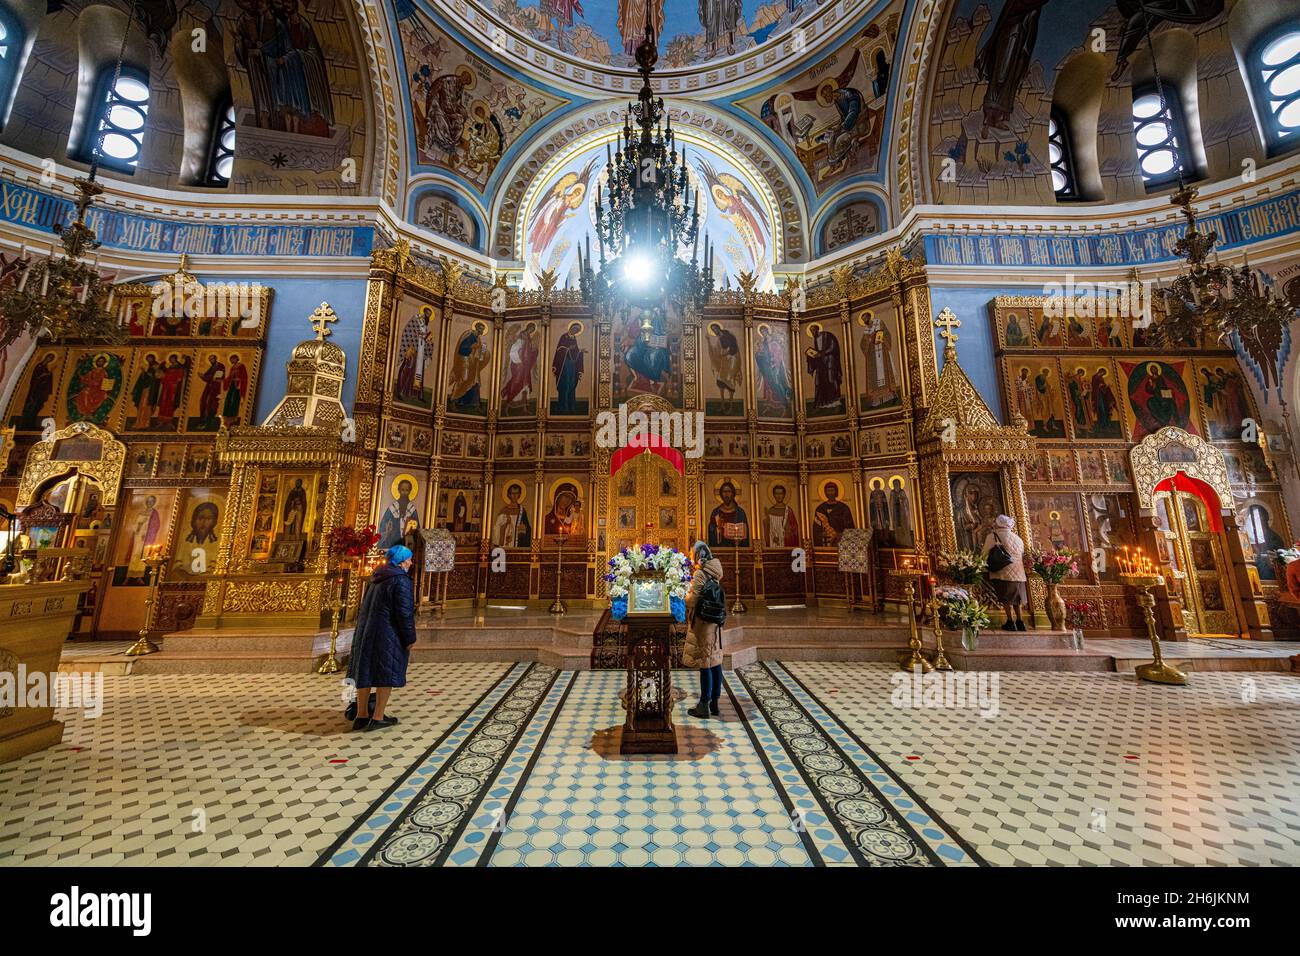 Intérieur de la cathédrale Alexandre Nevsky, Novosibirsk, Oblast de Novosibirsk, Russie, Eurasie Banque D'Images